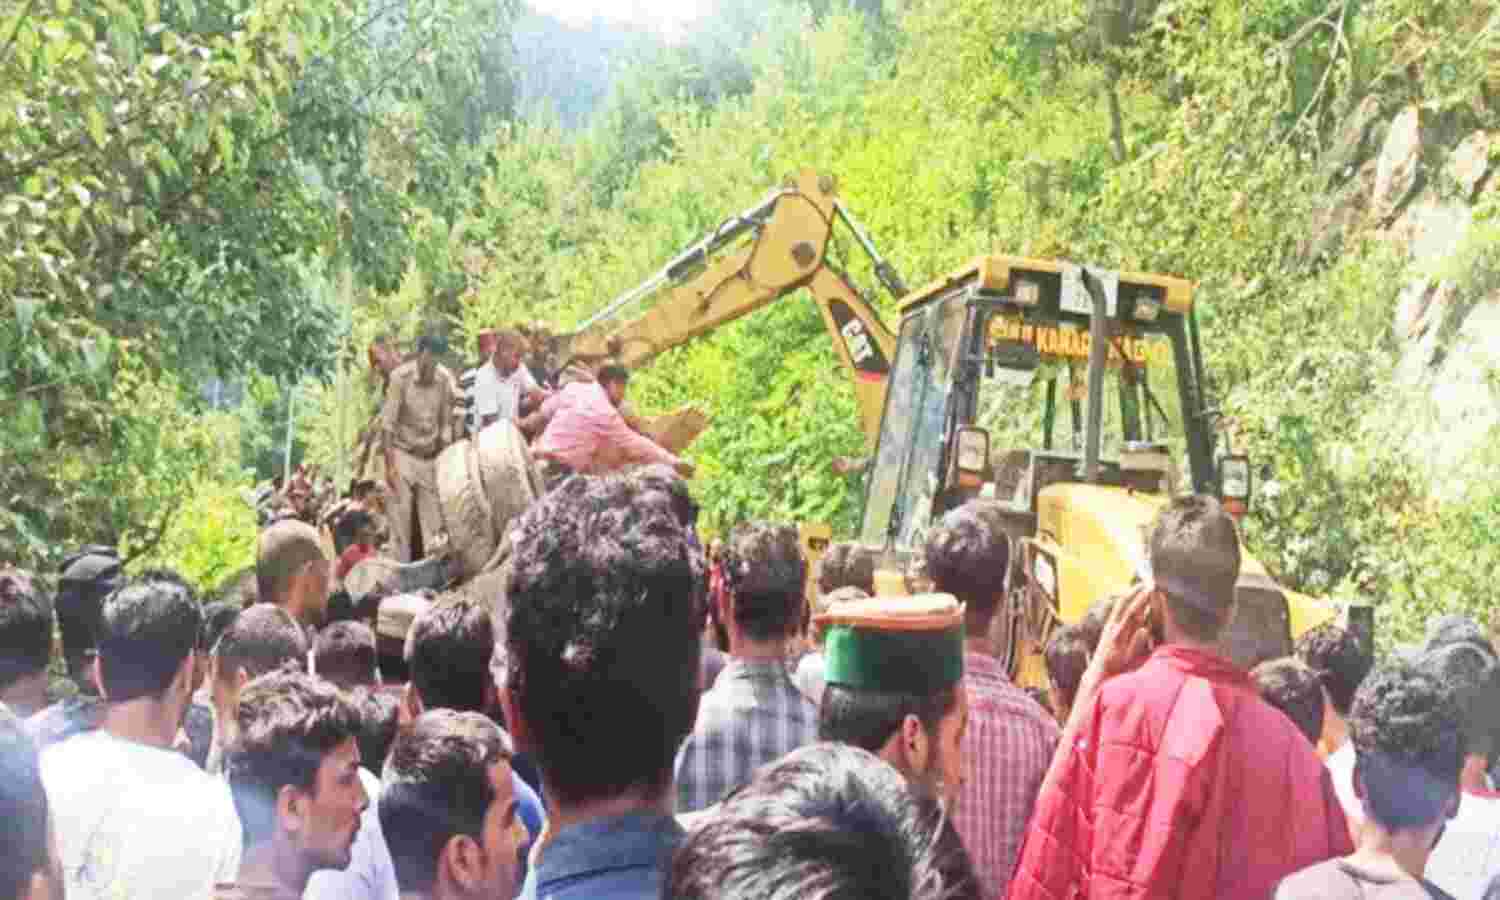 Himachal Pradesh News : कुल्लू में 200 मीटर नीचे सैंज घाटी में गिरी बस, स्कूली बच्चों समेत 12 से ज्यादा की मौत, अन्य घायल